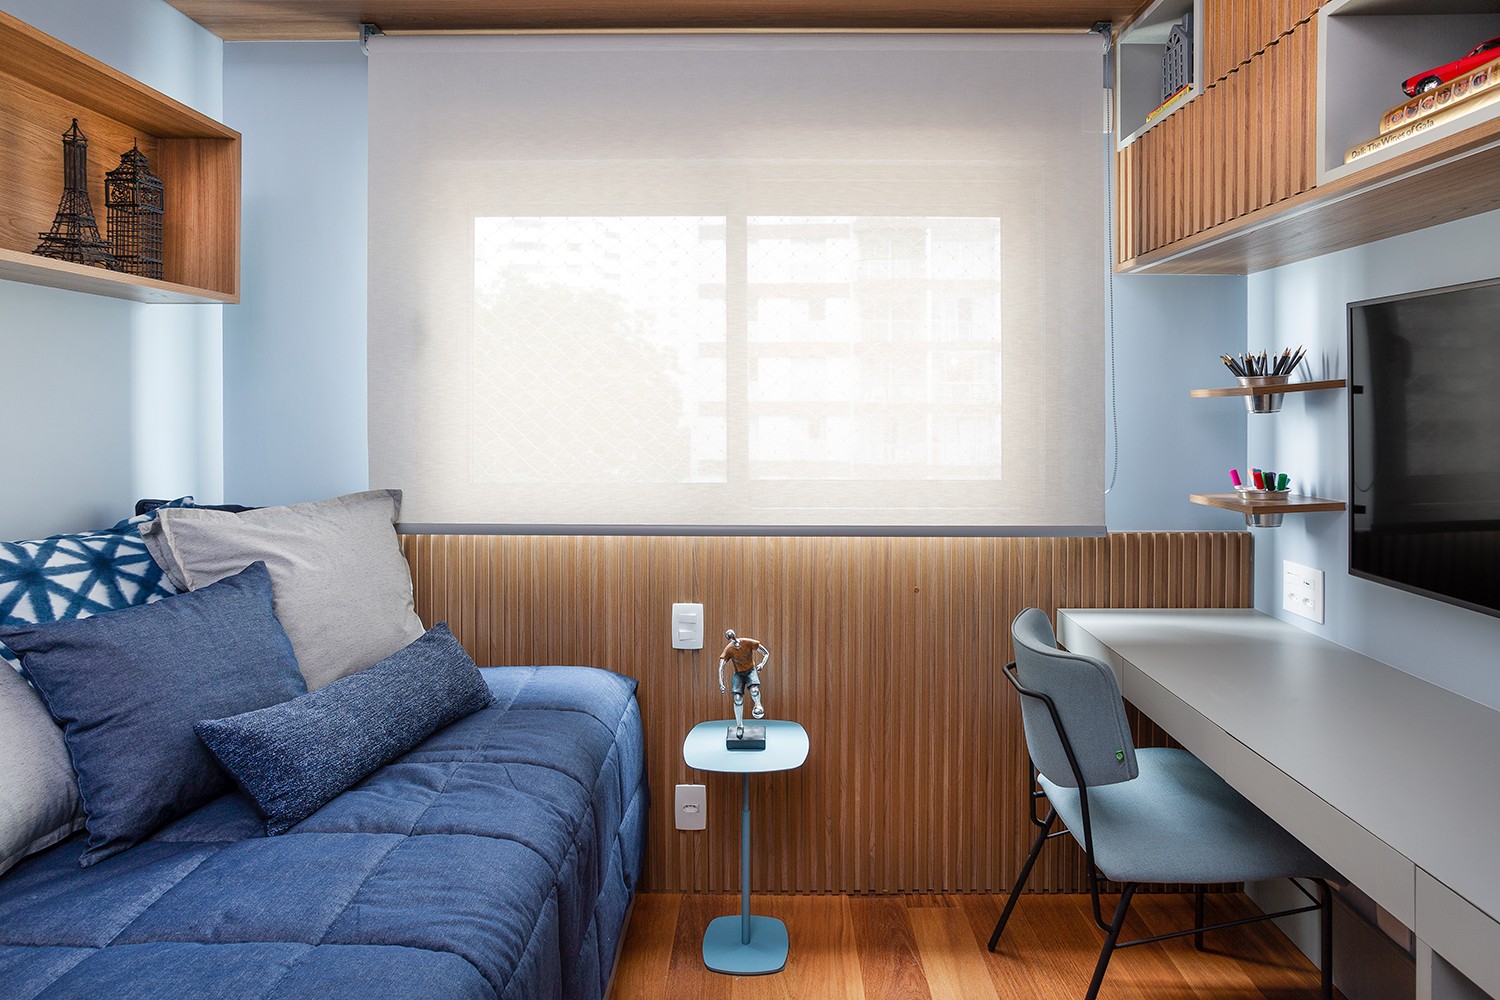 QUARTO DO MENINO | O layout e a marcenaria se repete nos dois quartos. As persianas são da Uniflex (Foto: Júlia Ribeiro / Divulgação)